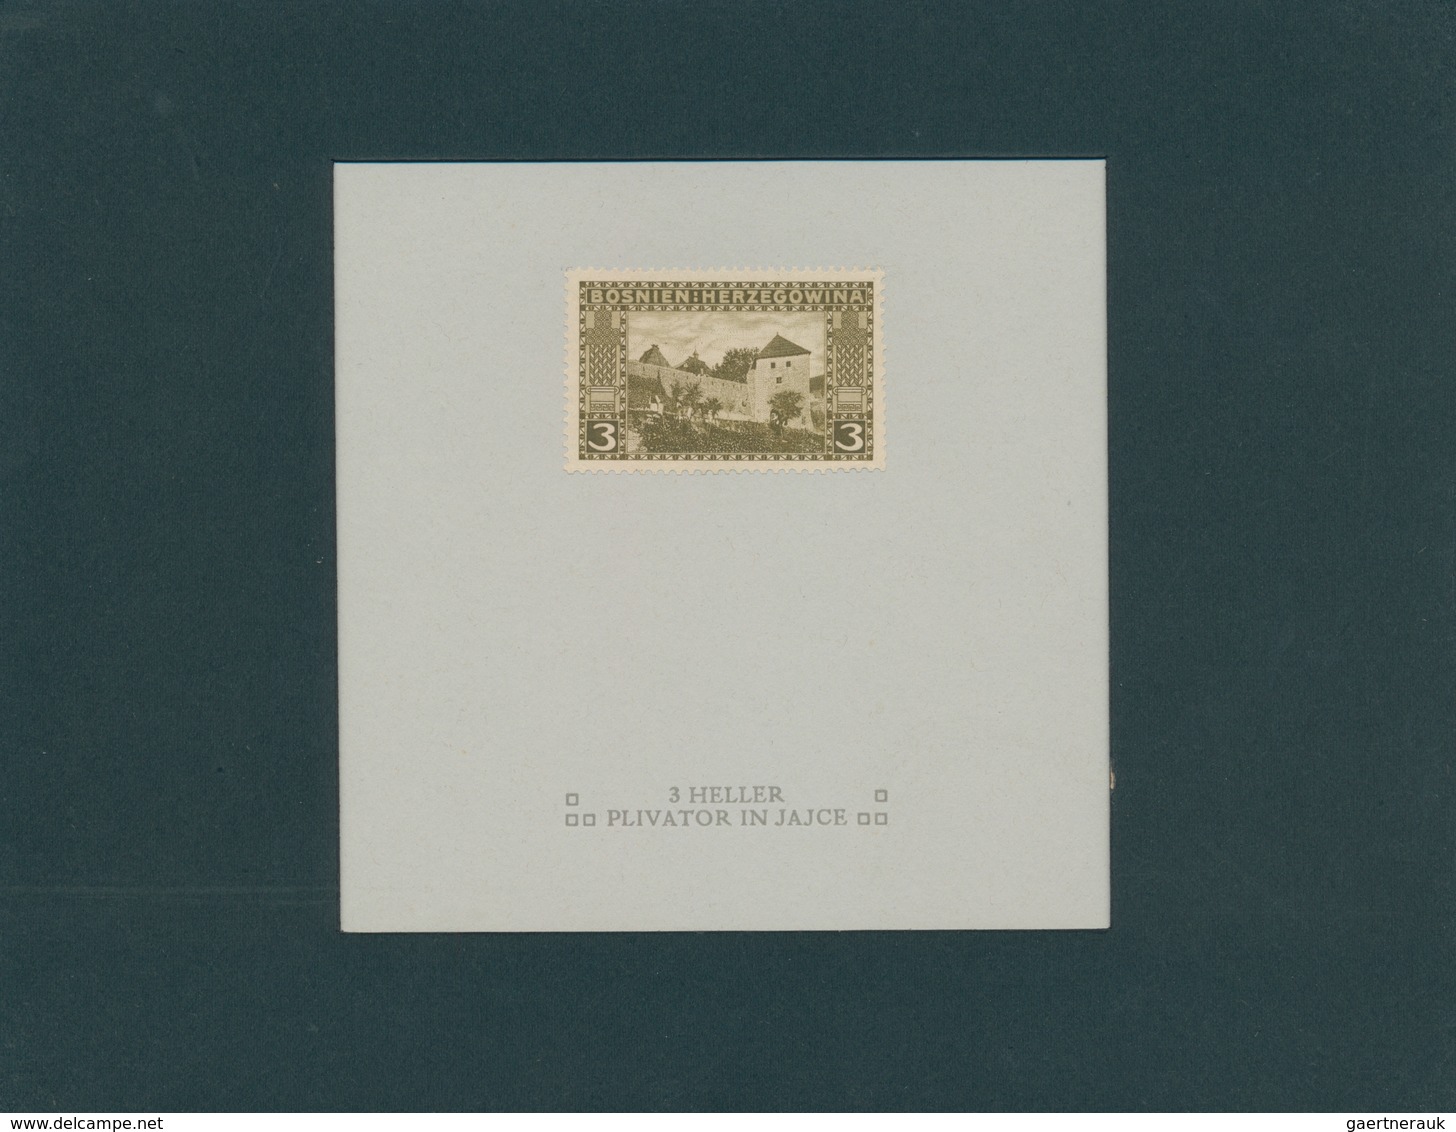 Bosnien und Herzegowina (Österreich 1879/1918): 1906, Freimarken, 1 H. bis 5 Kr, komplette Serie von